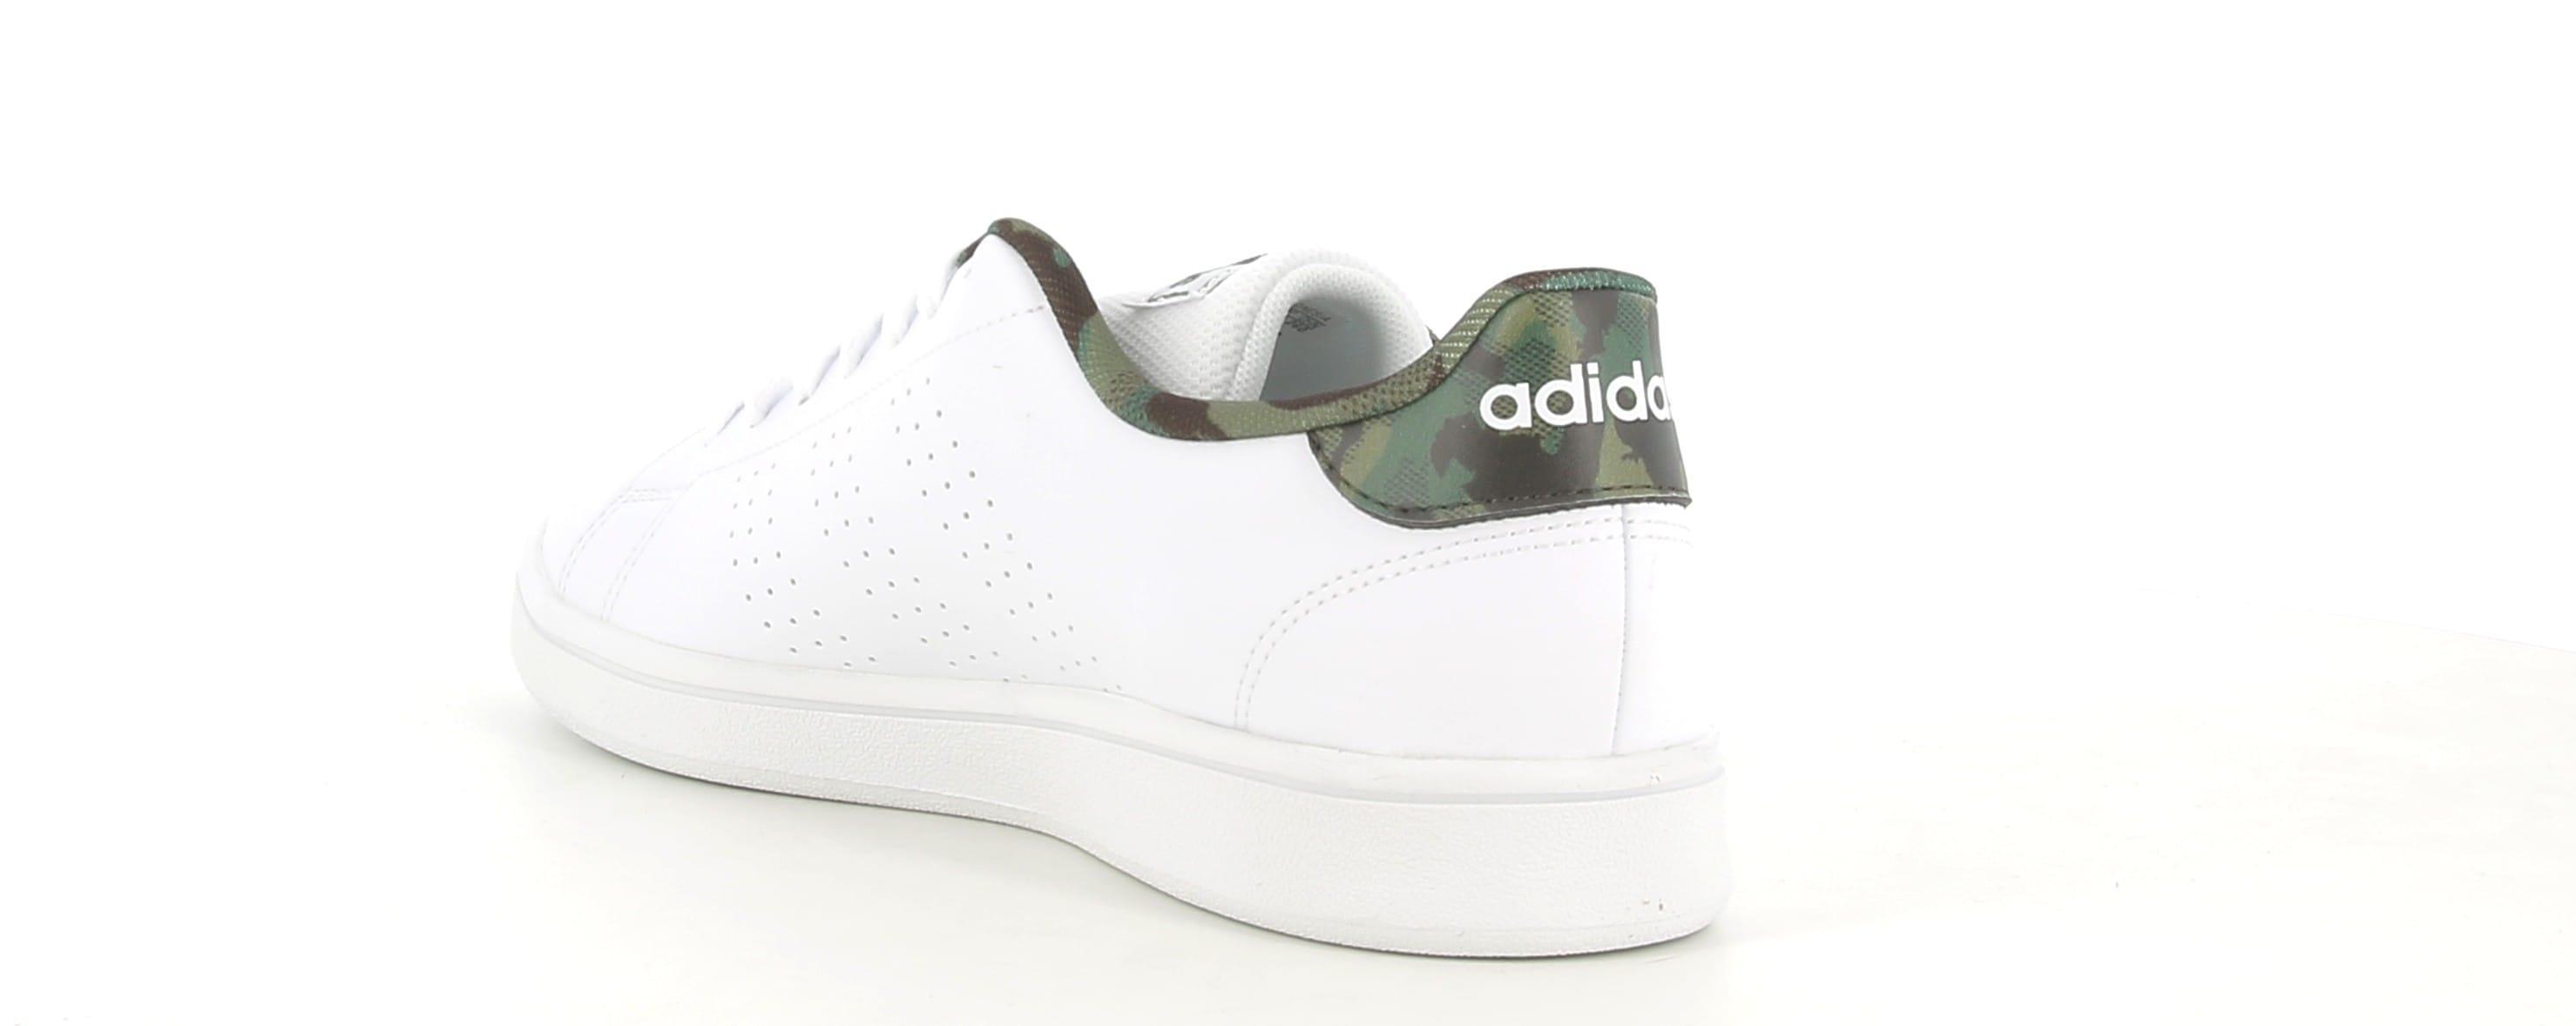 adidas sneakers adidas advantage base gw9283.da uomo,colore bianco/verde militare